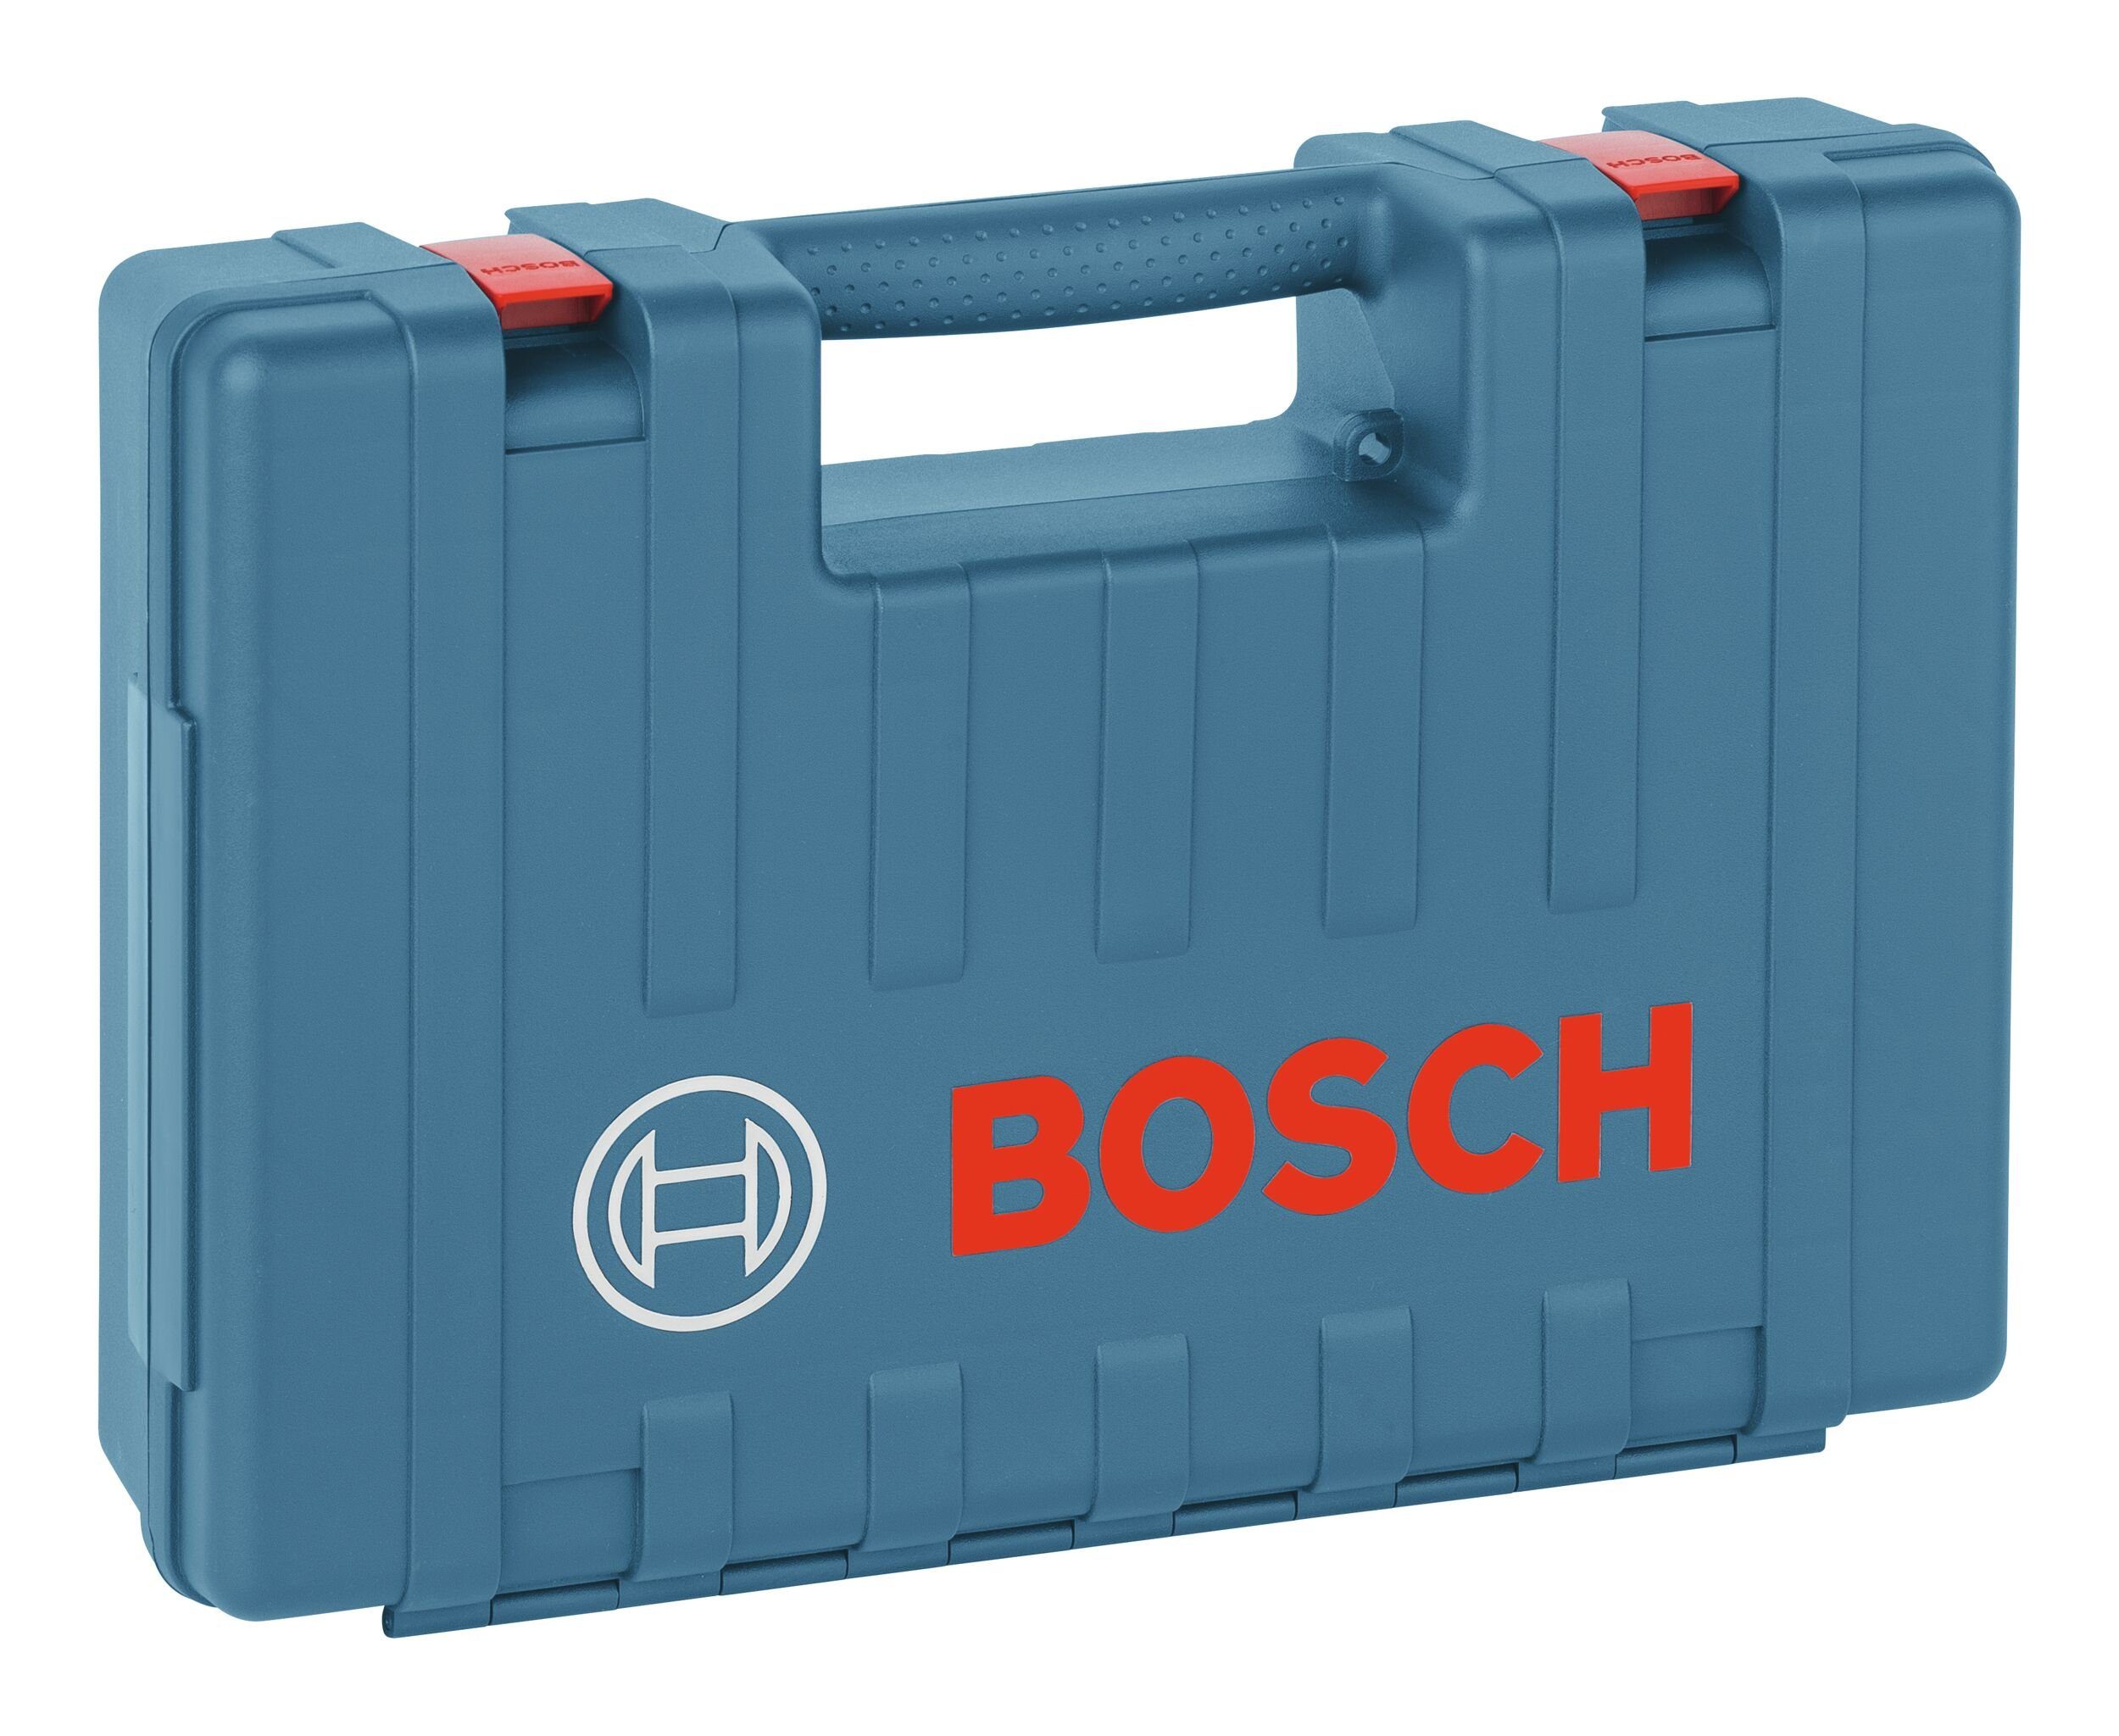 Bosch Home & Garden Werkzeugkoffer, Kunststoffkoffer - 446 x 316 x 124 mm